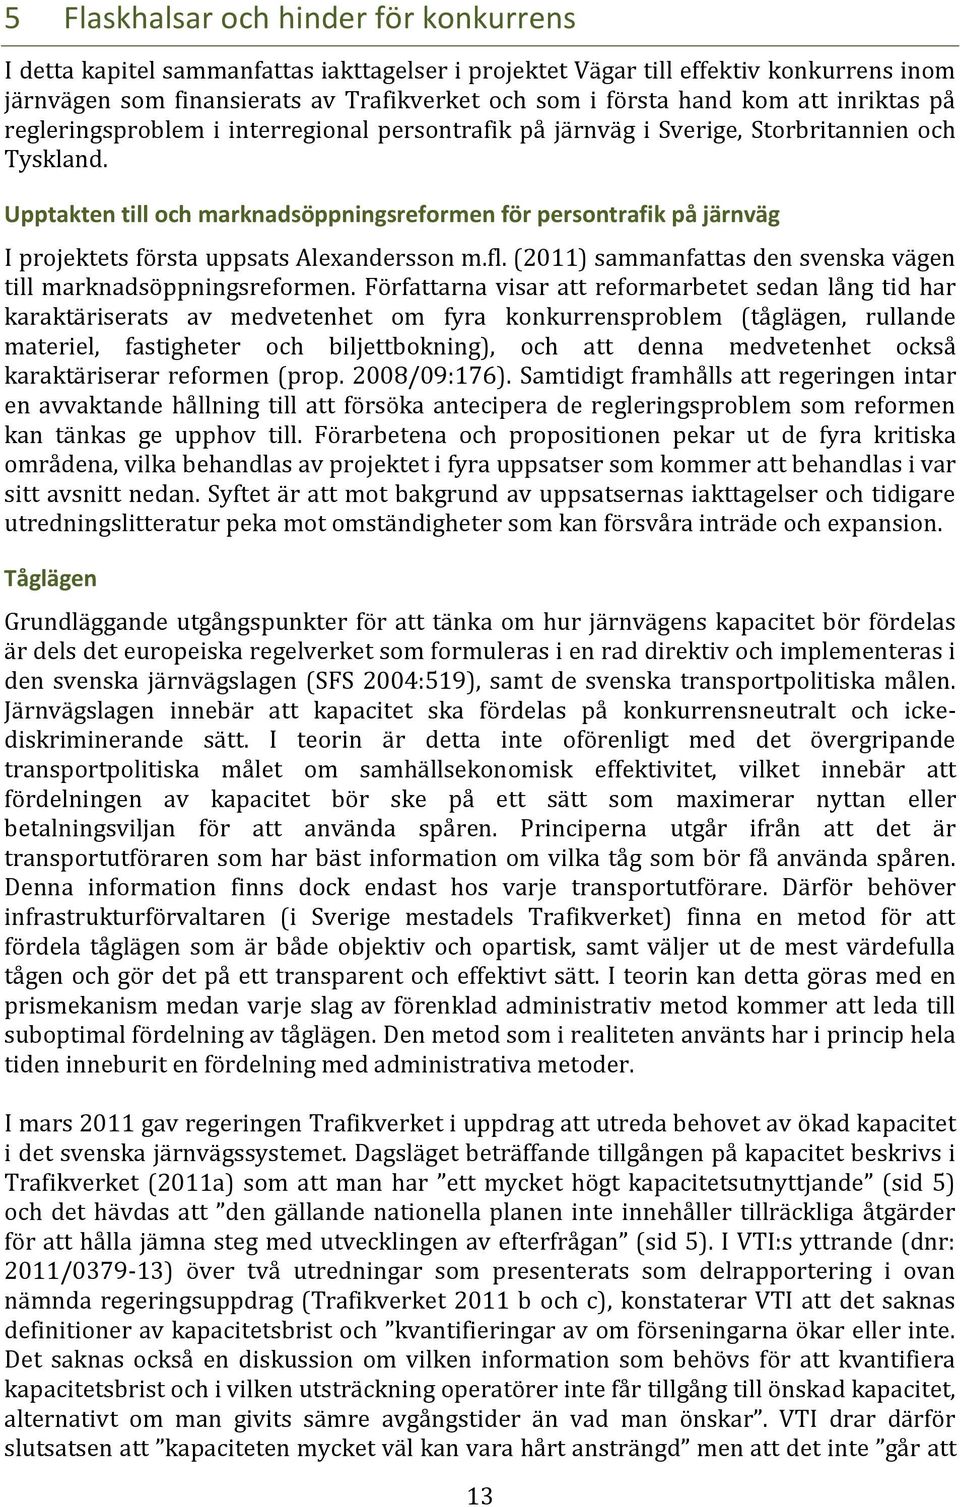 Upptakten till och marknadsöppningsreformen för persontrafik på järnväg I projektets första uppsats Alexandersson m.fl. (2011) sammanfattas den svenska vägen till marknadsöppningsreformen.